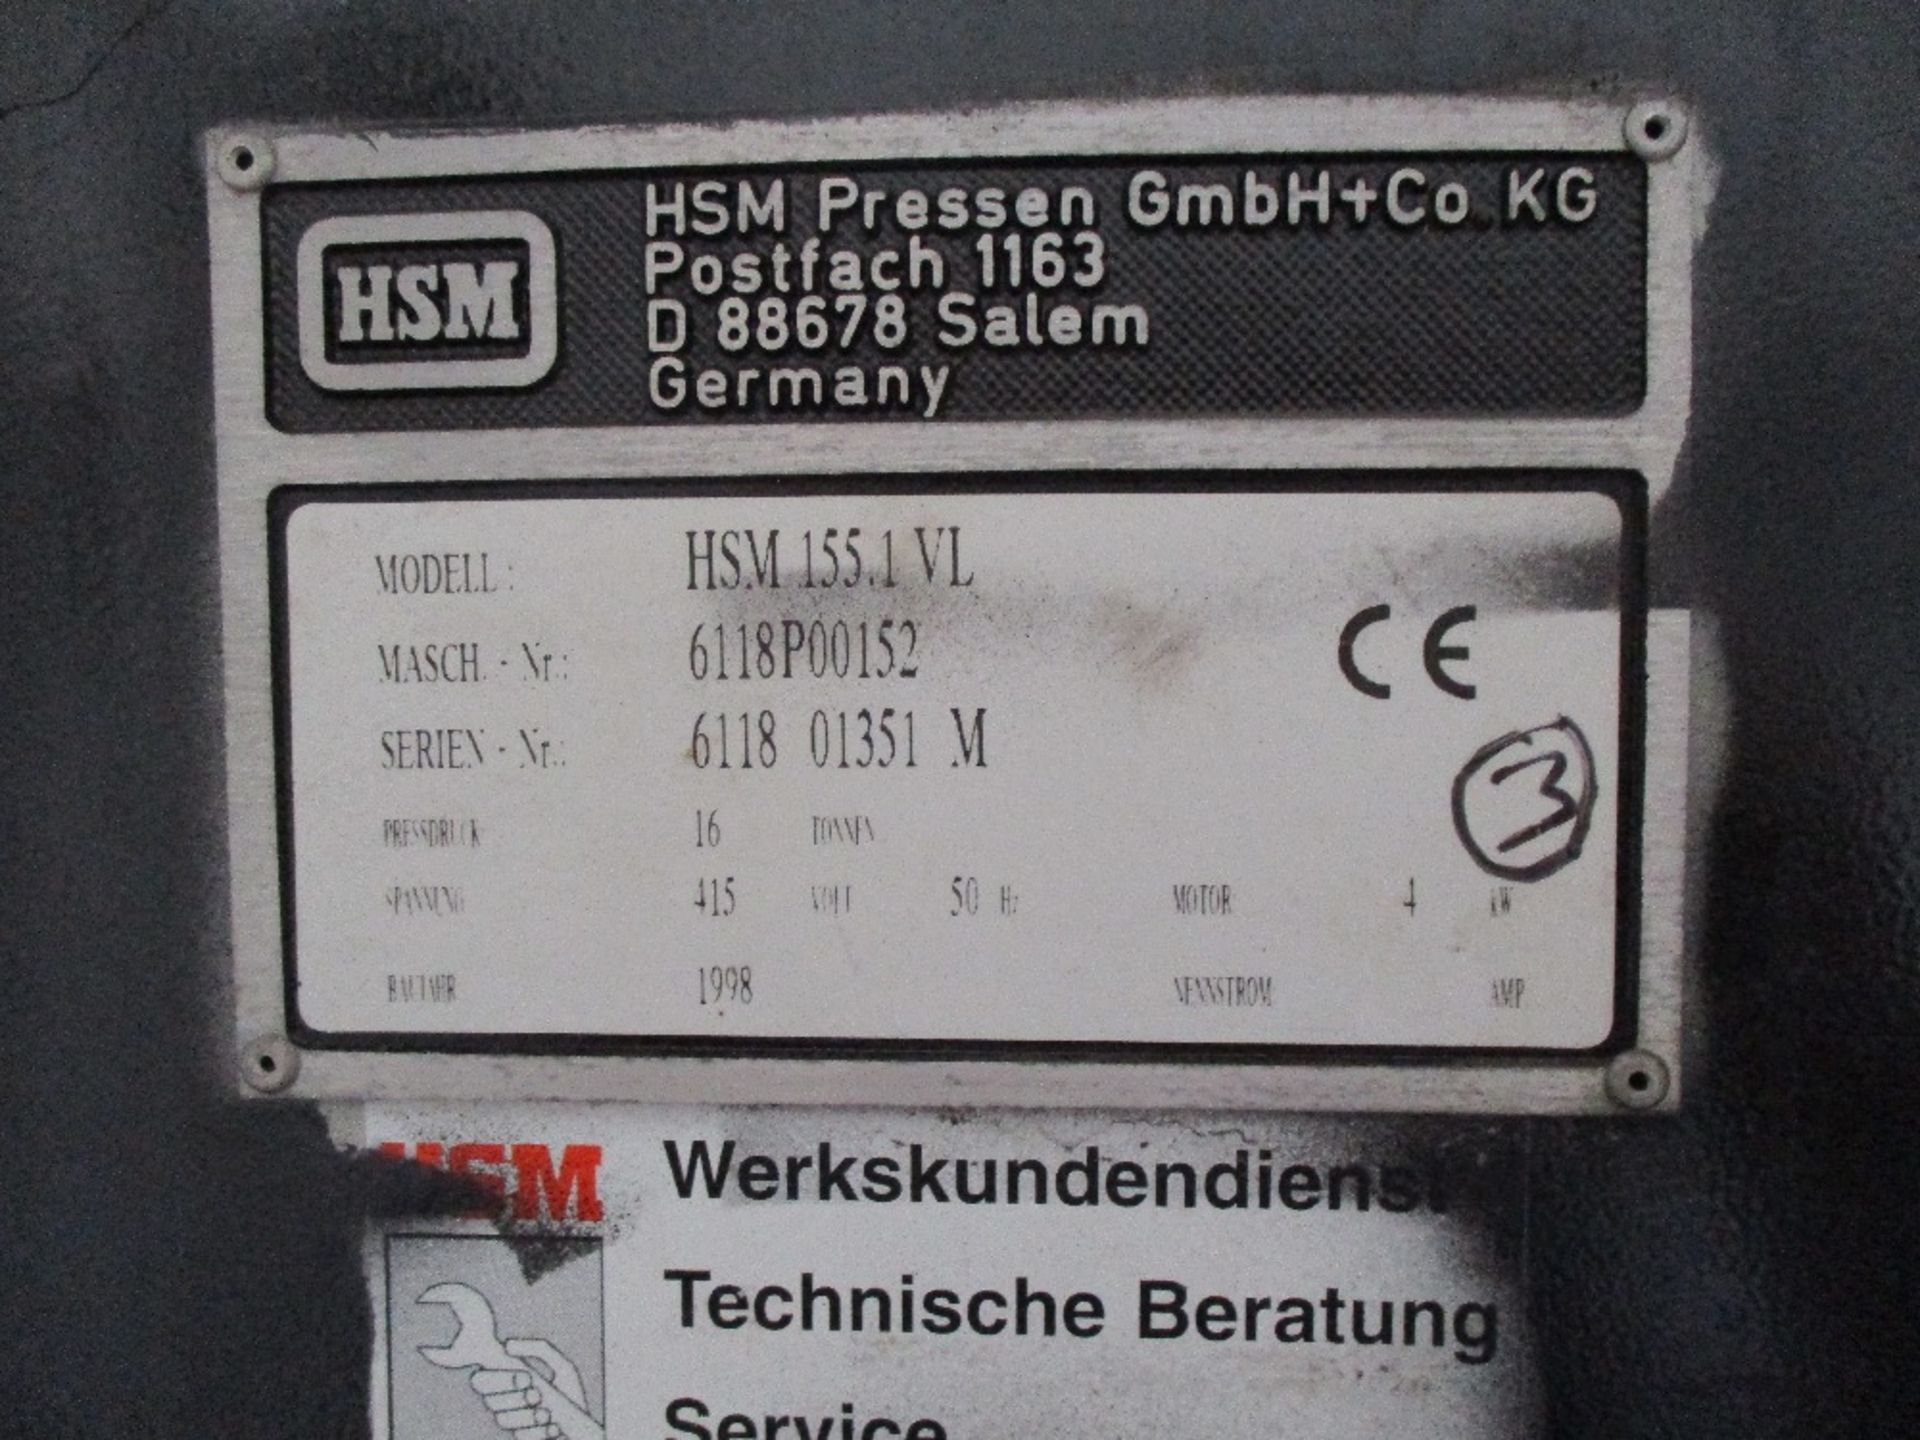 HSM 155.1VL waste compactor - Image 3 of 13